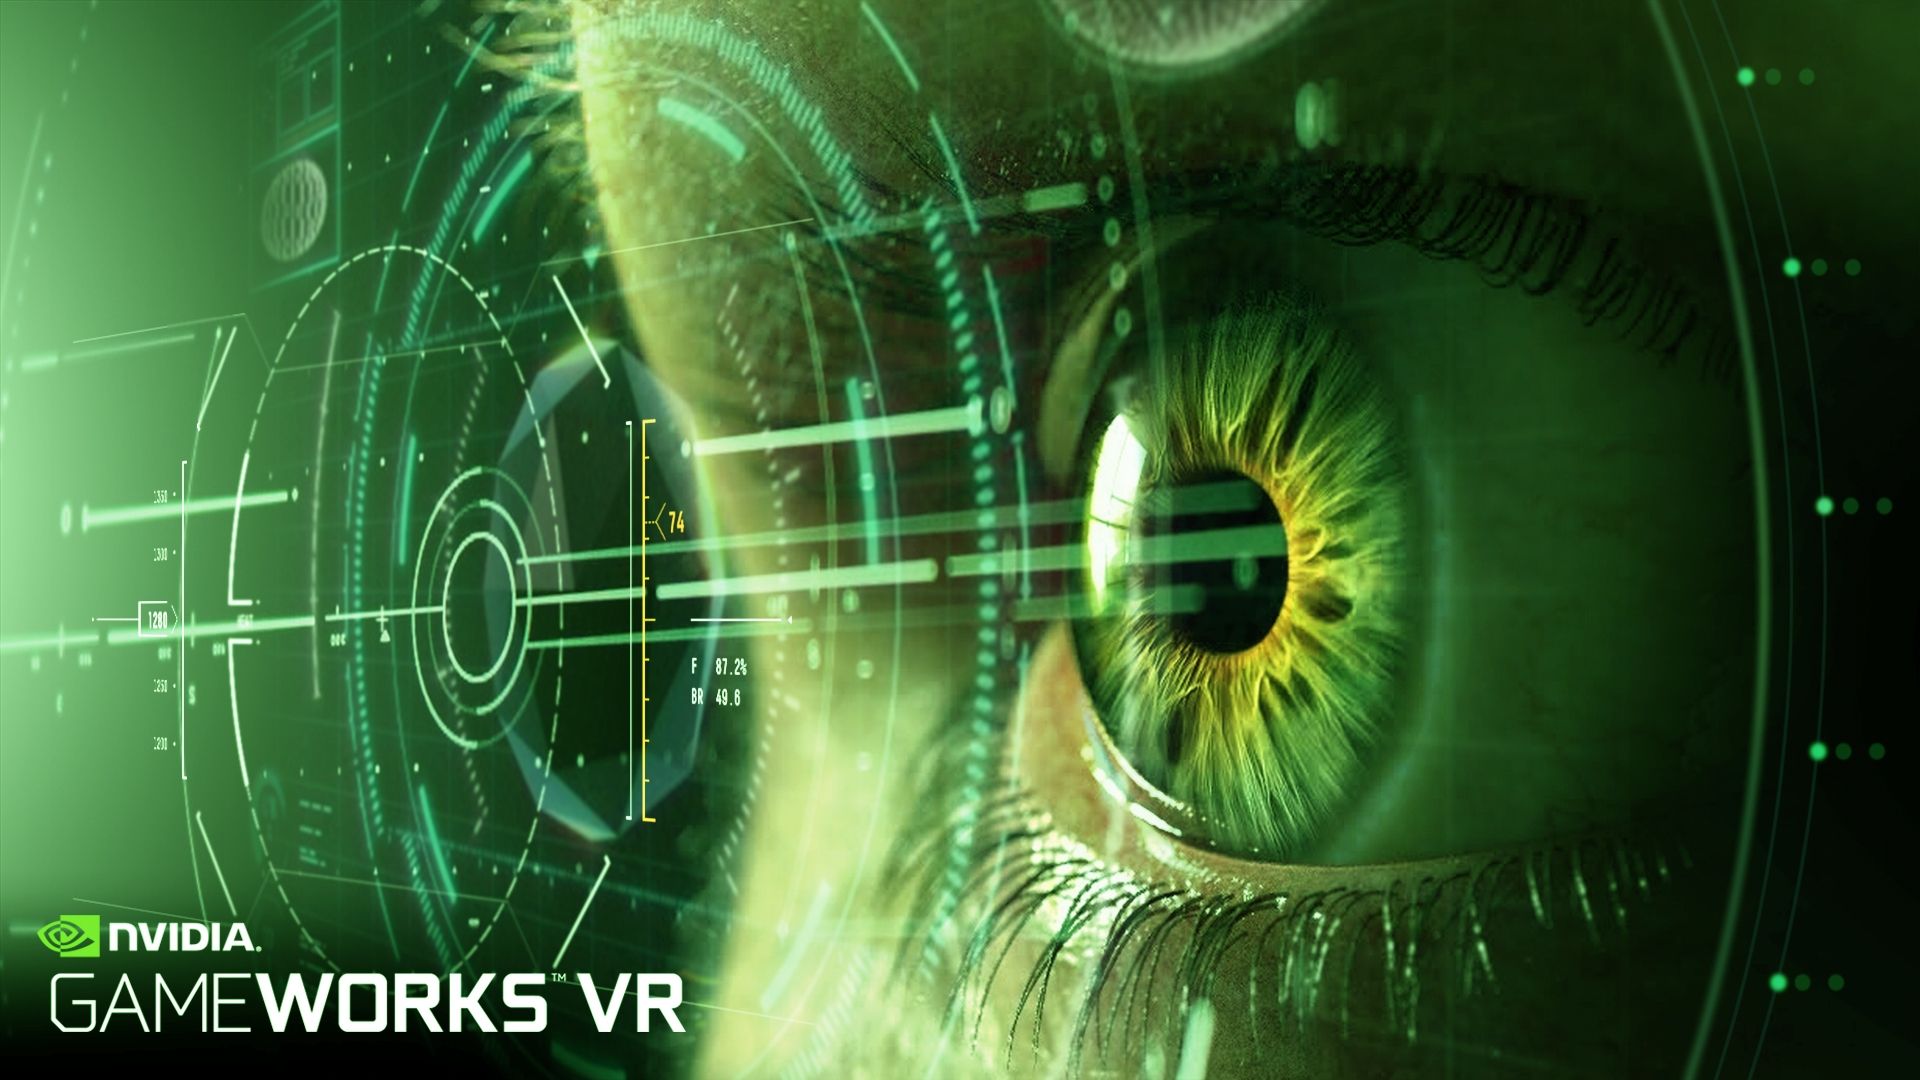 La realta' virtuale compie importanti passi avanti grazie a NVIDIA